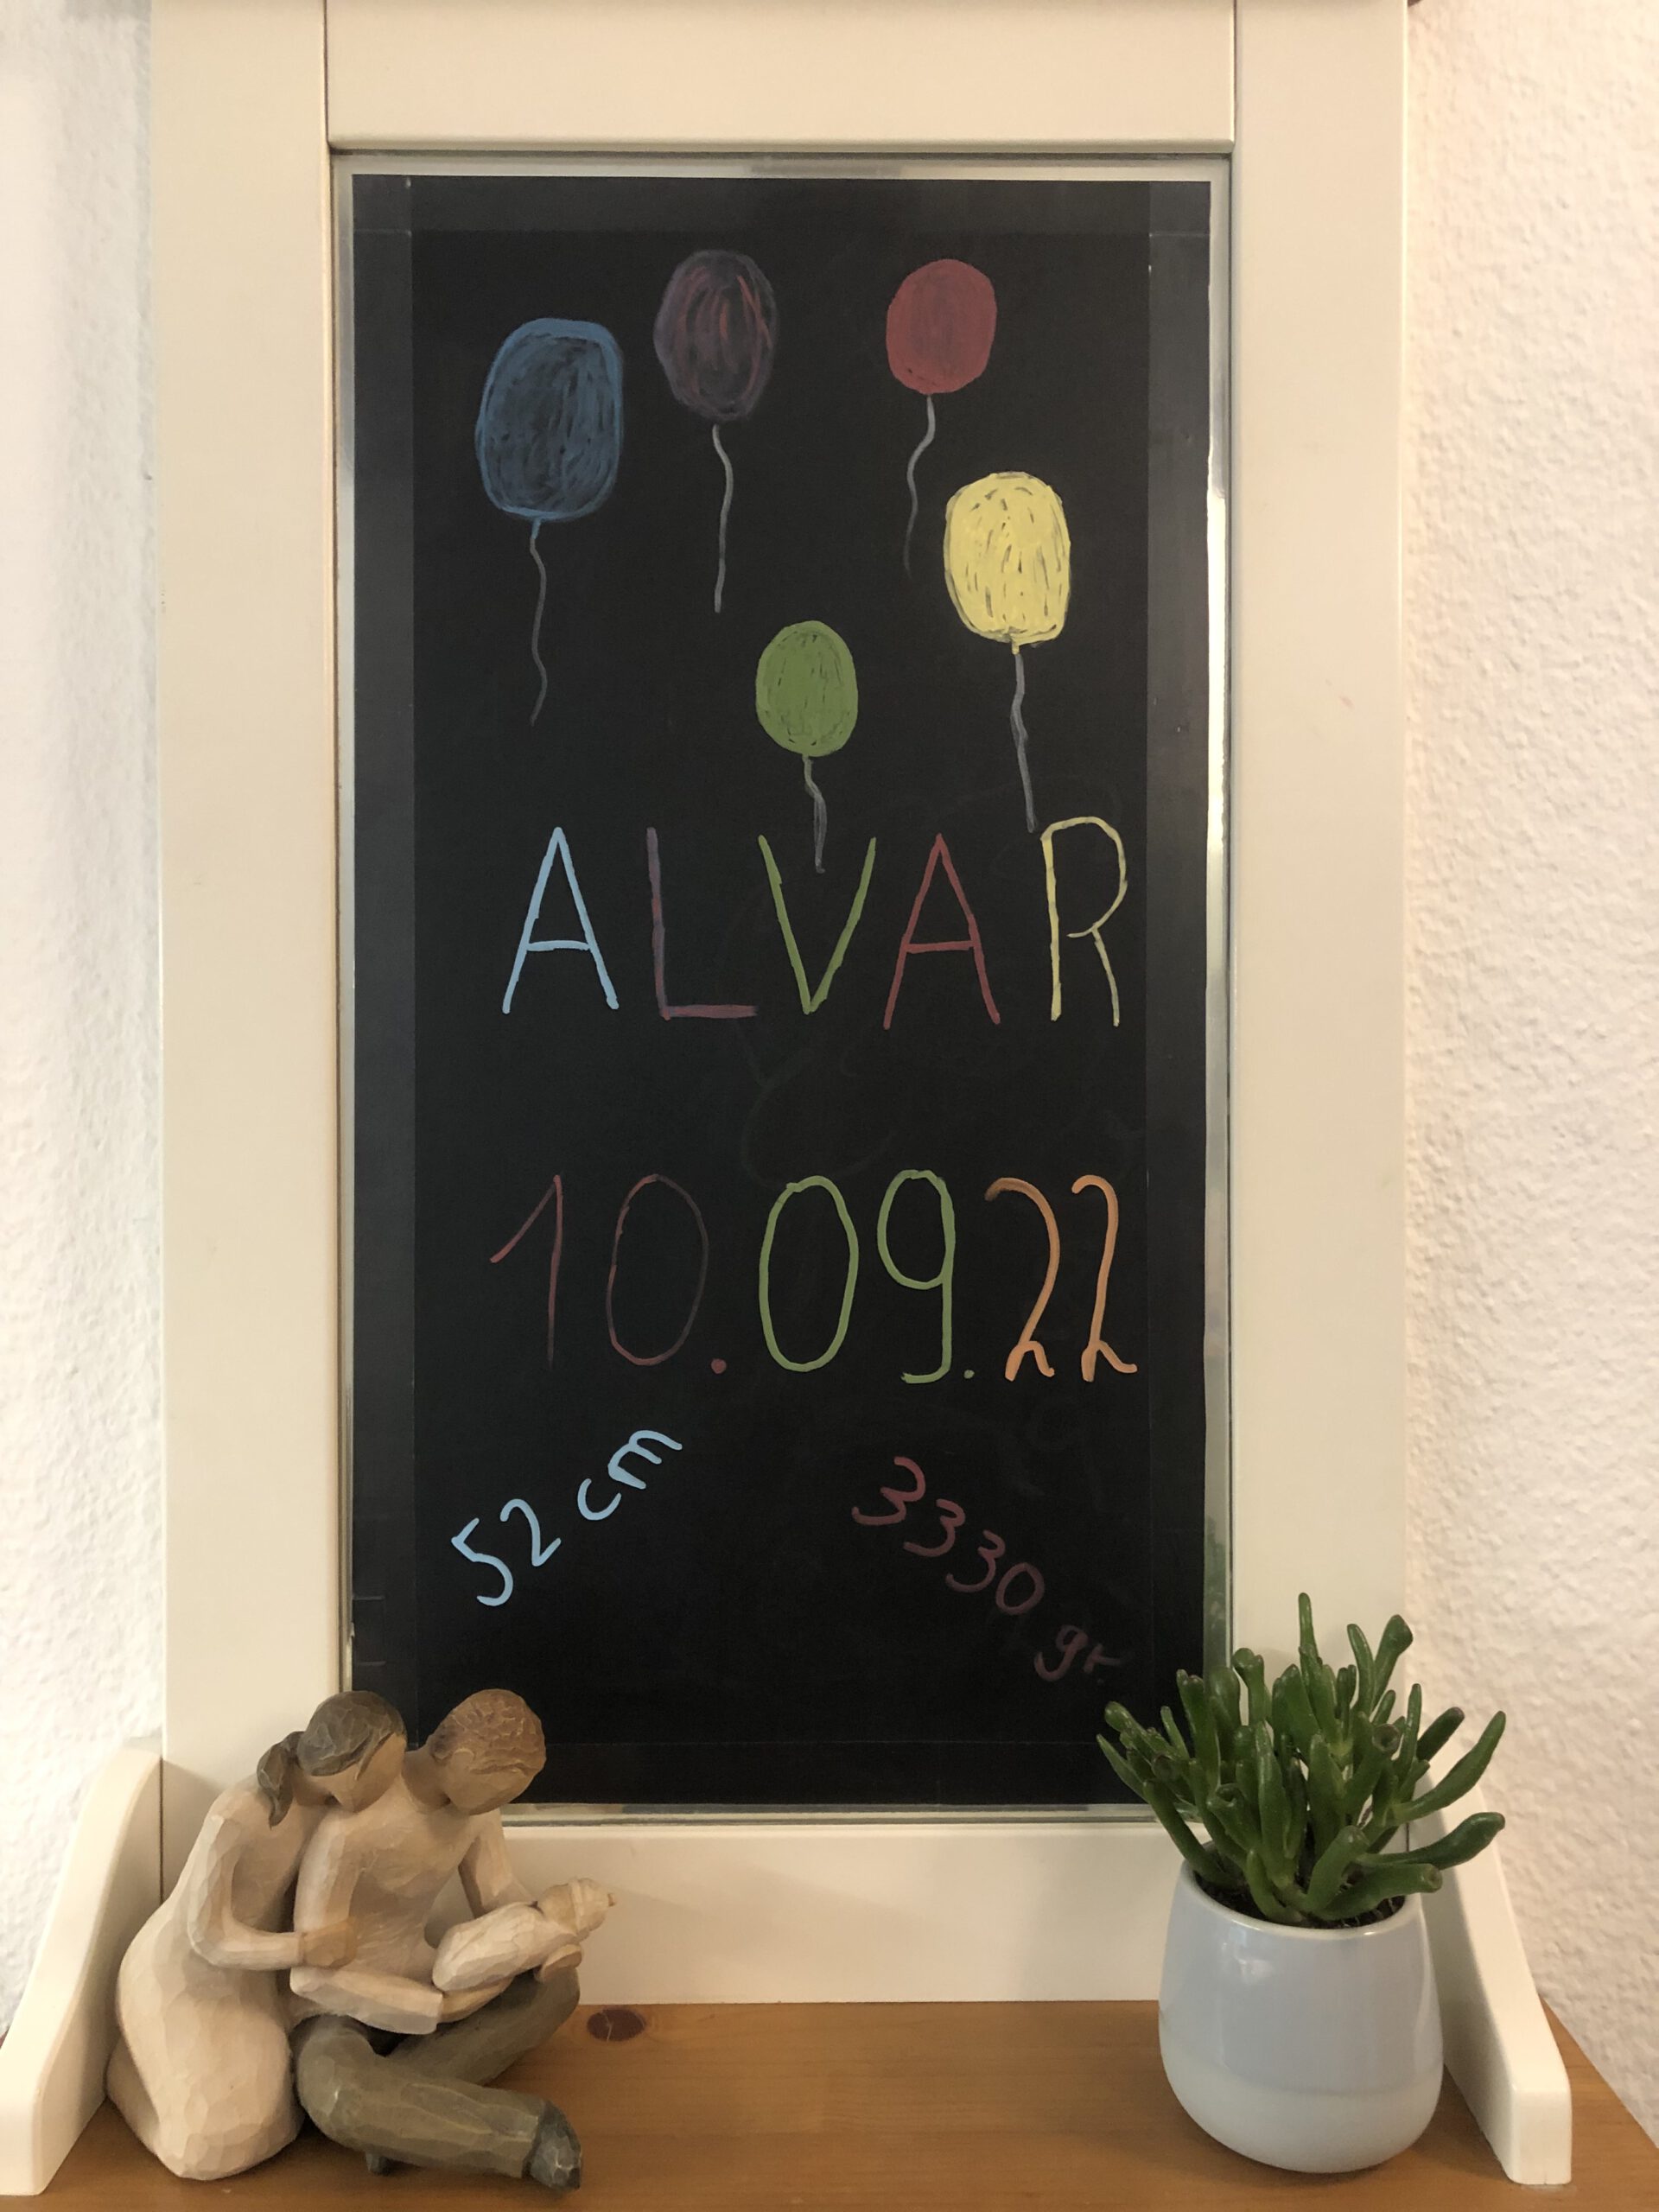 10.09.22 Alvar